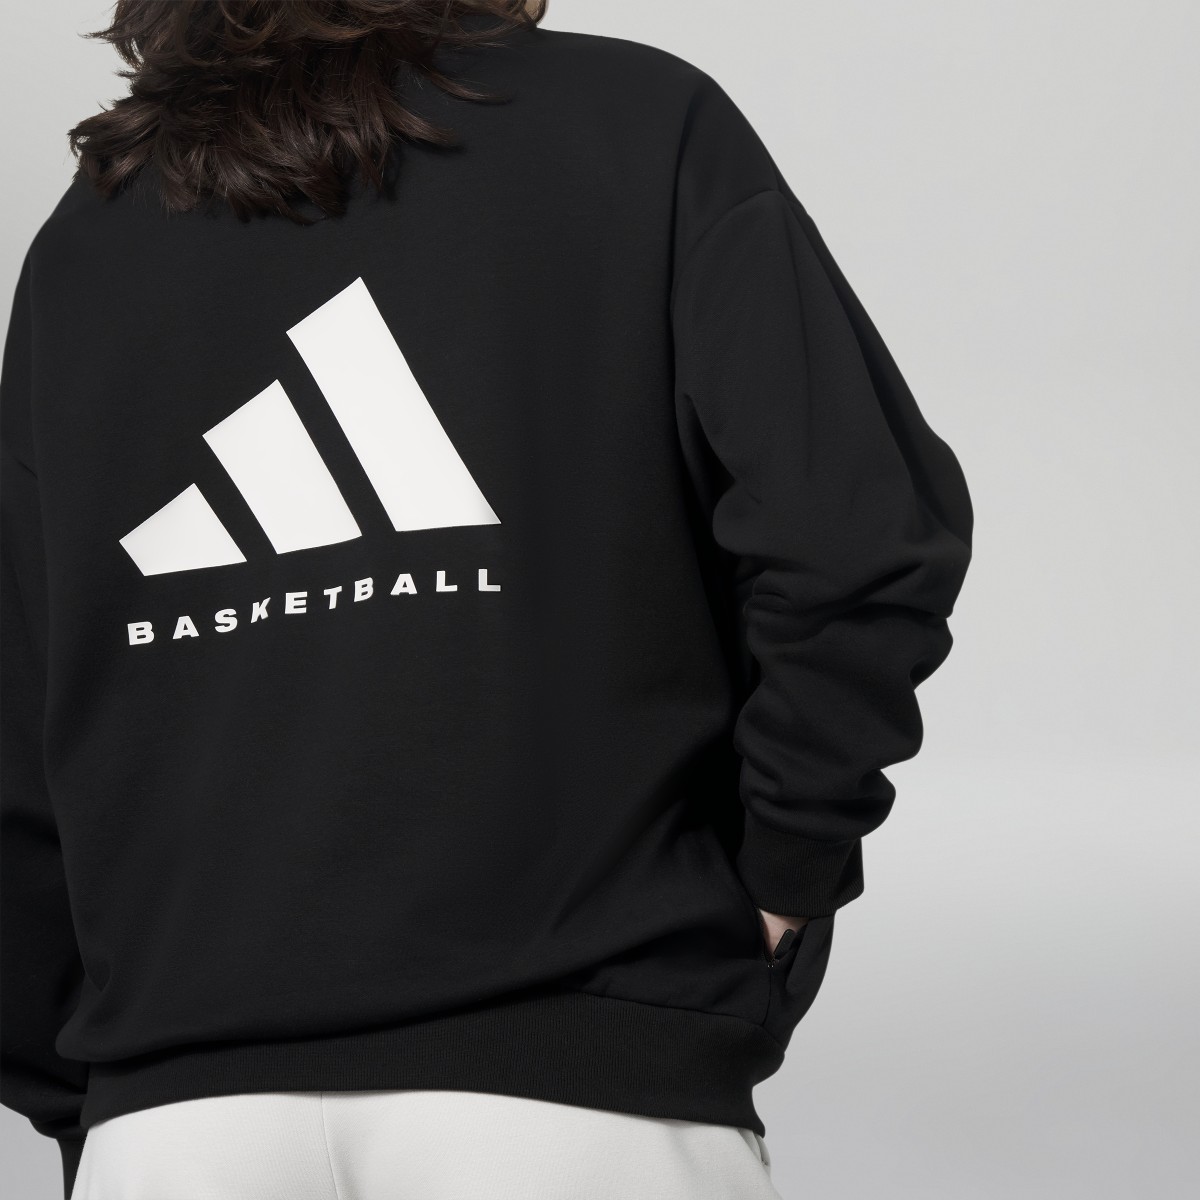 Adidas Sweatshirt adidas Basketball. 5